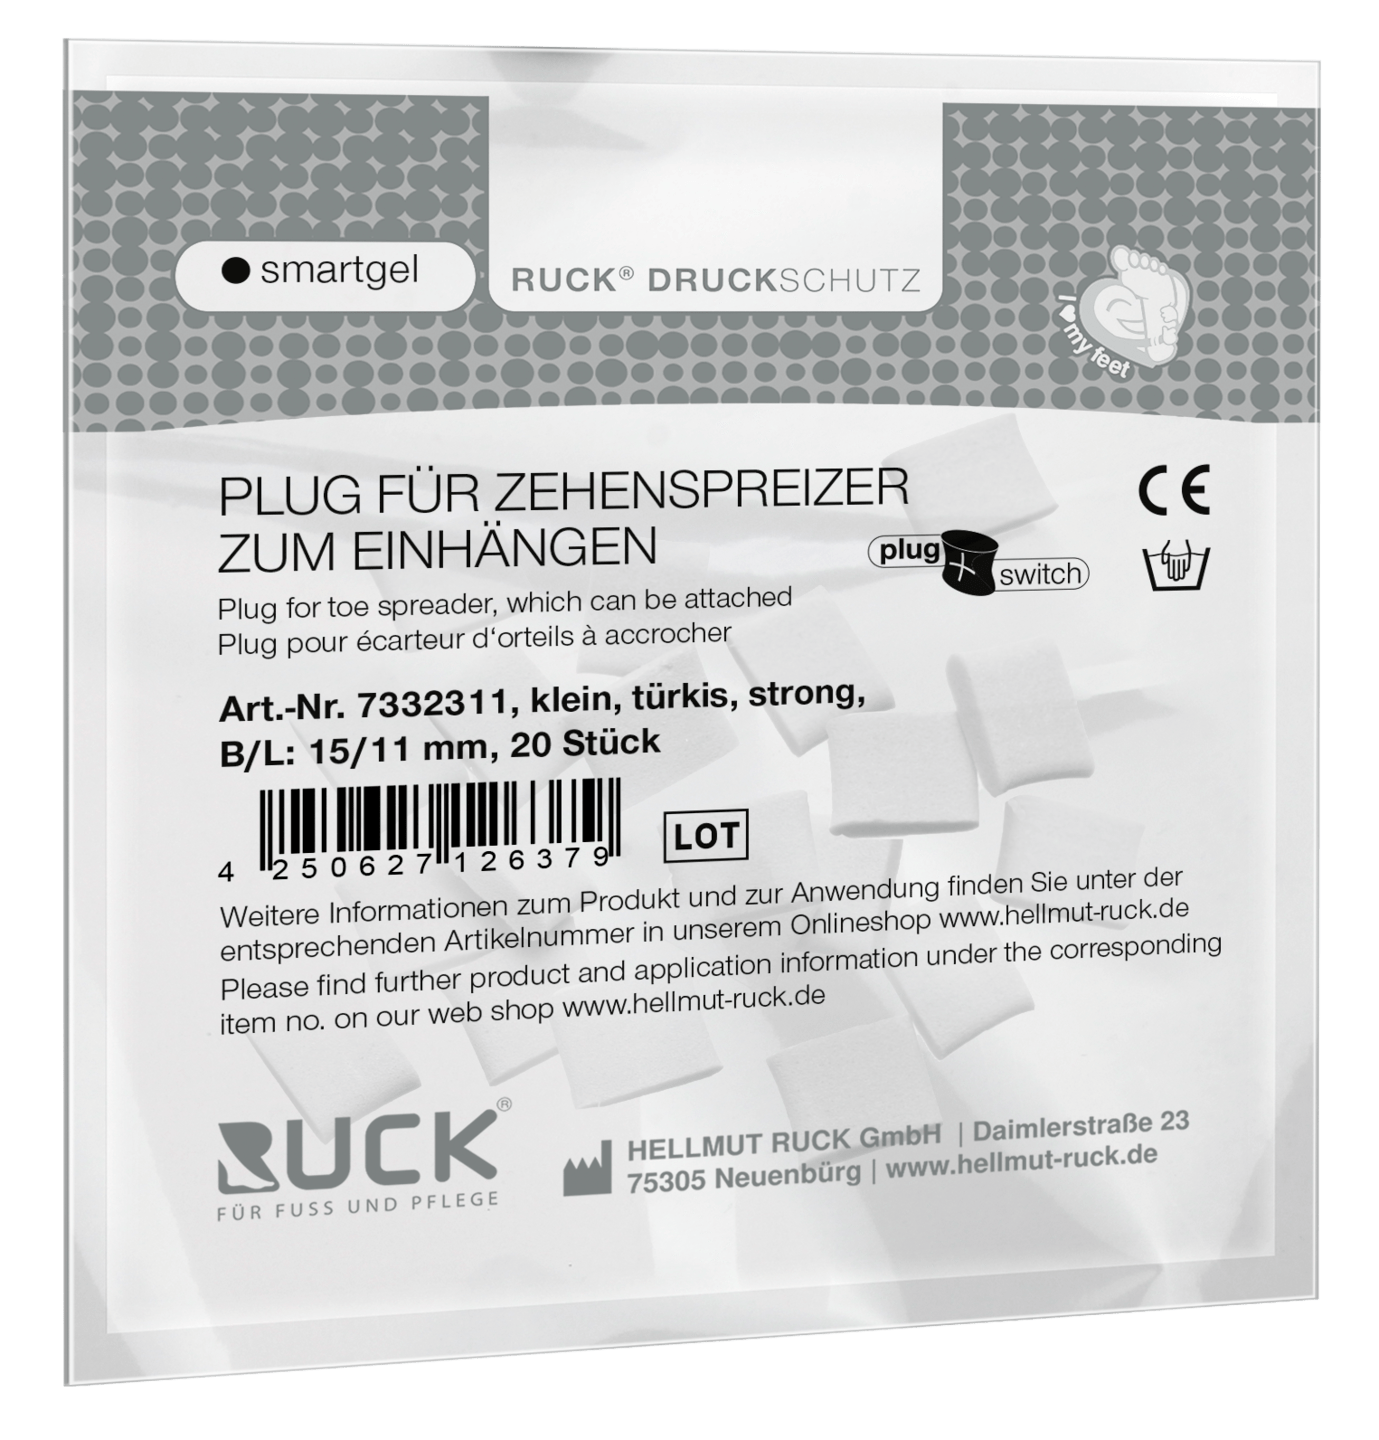 RUCK DRUCKSCHUTZ - Plugs für RUCK® DRUCKSCHUTZ smartgel plug+switch Zehenspreizer zum Einhängen in türkis